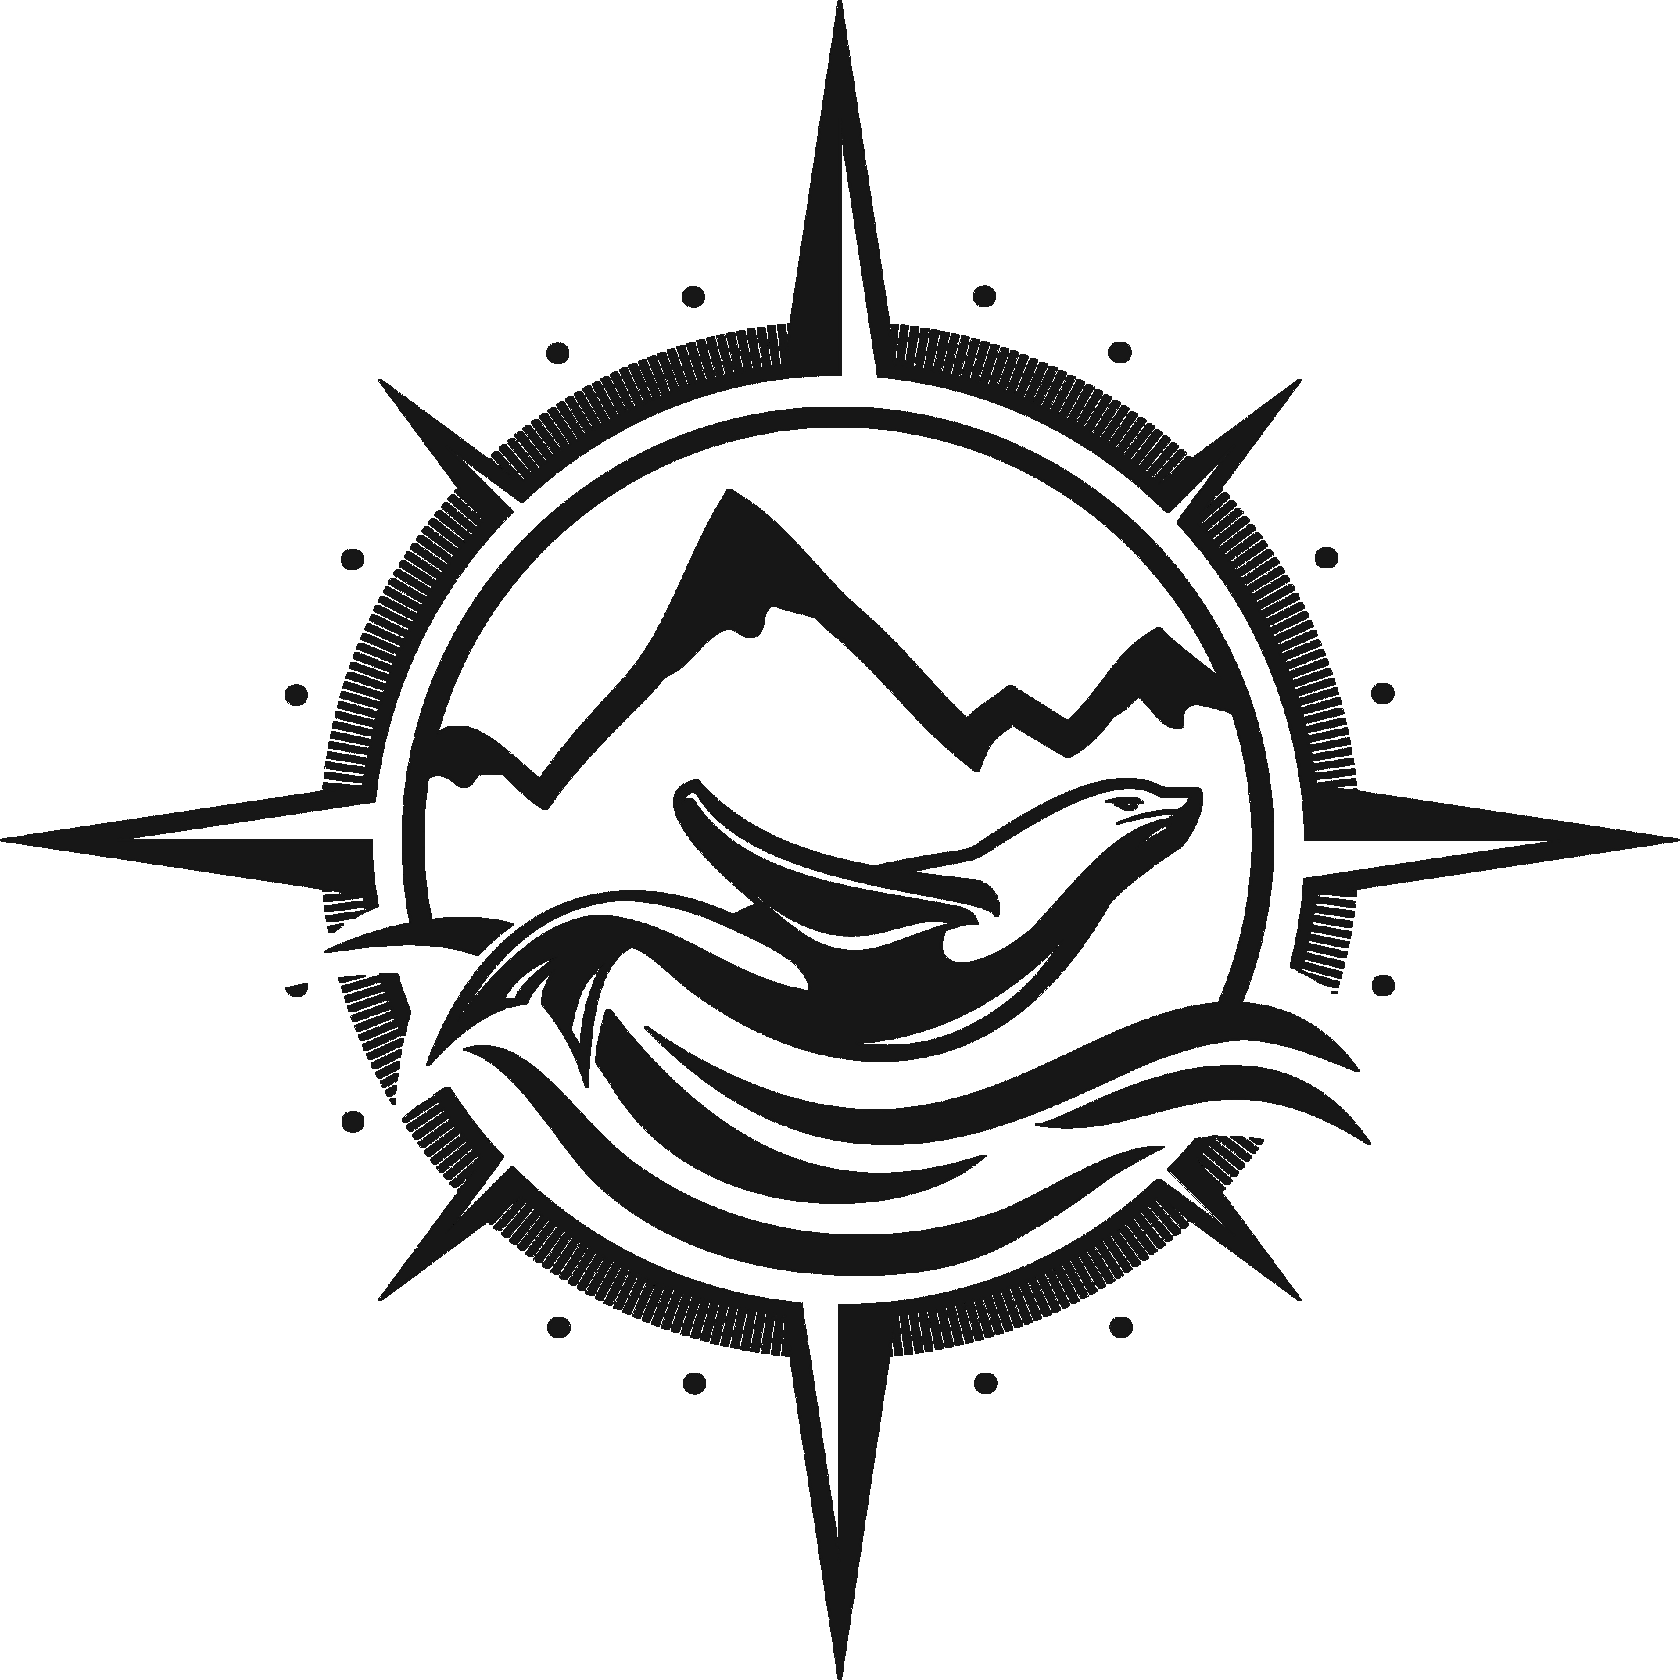 Логотип спортивного клуба «Нетюлень» в виде тюленя, который плавает в море на фоне гор и всё это в очертаниях компаса с 4 направлениями света: Север, Юг, Запад, Восток